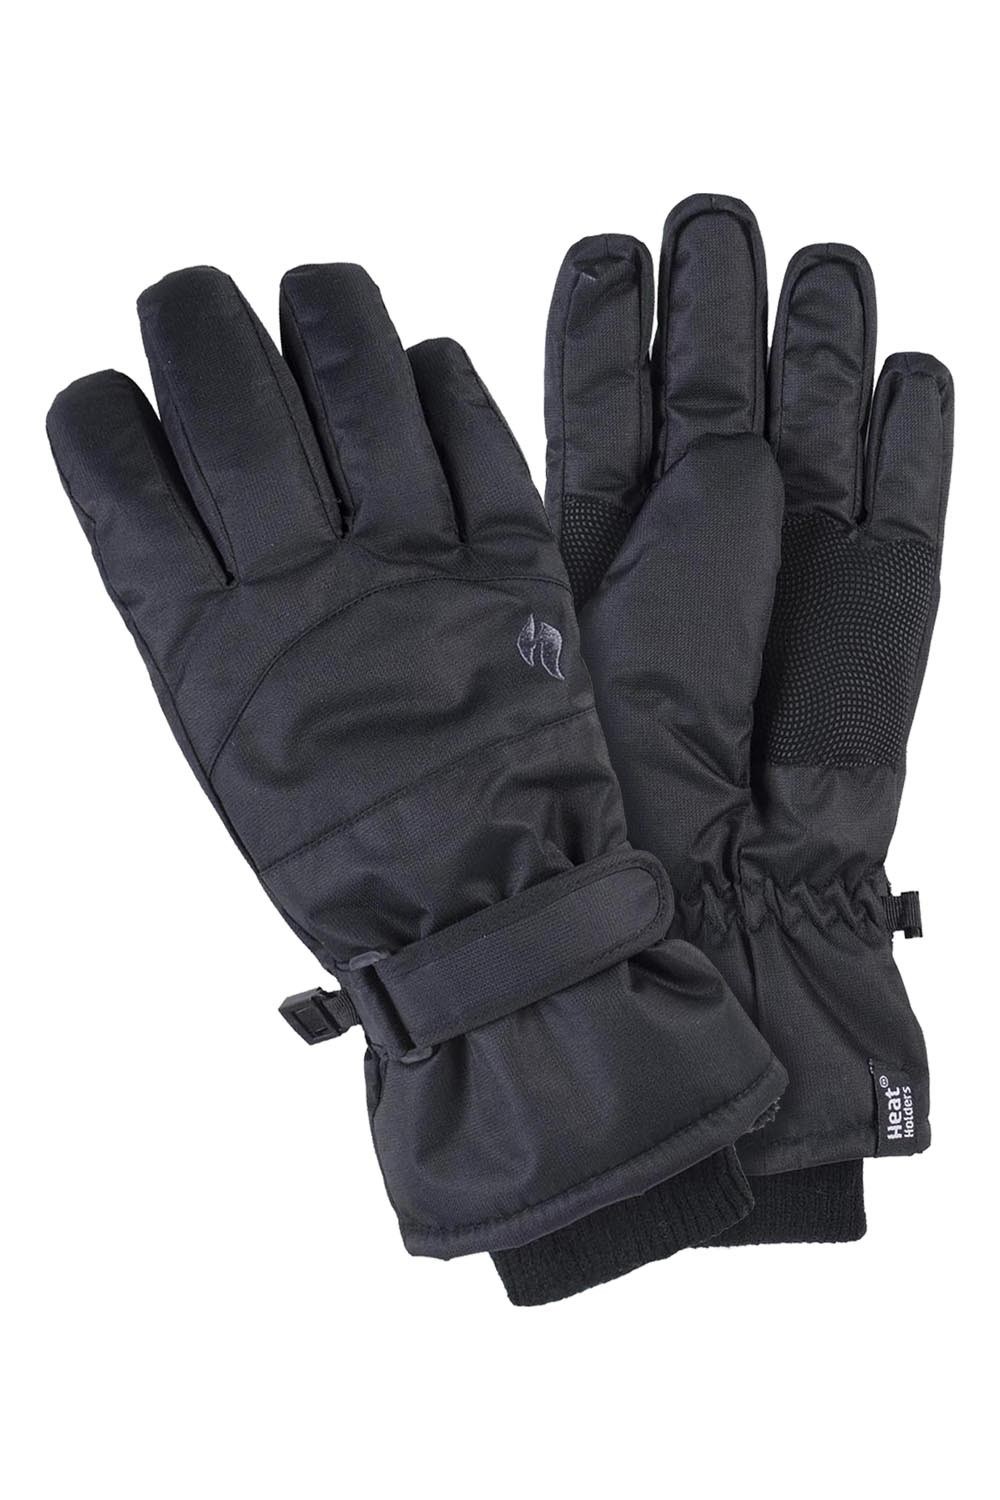 Womens Waterproof Thermal Ski Gloves -